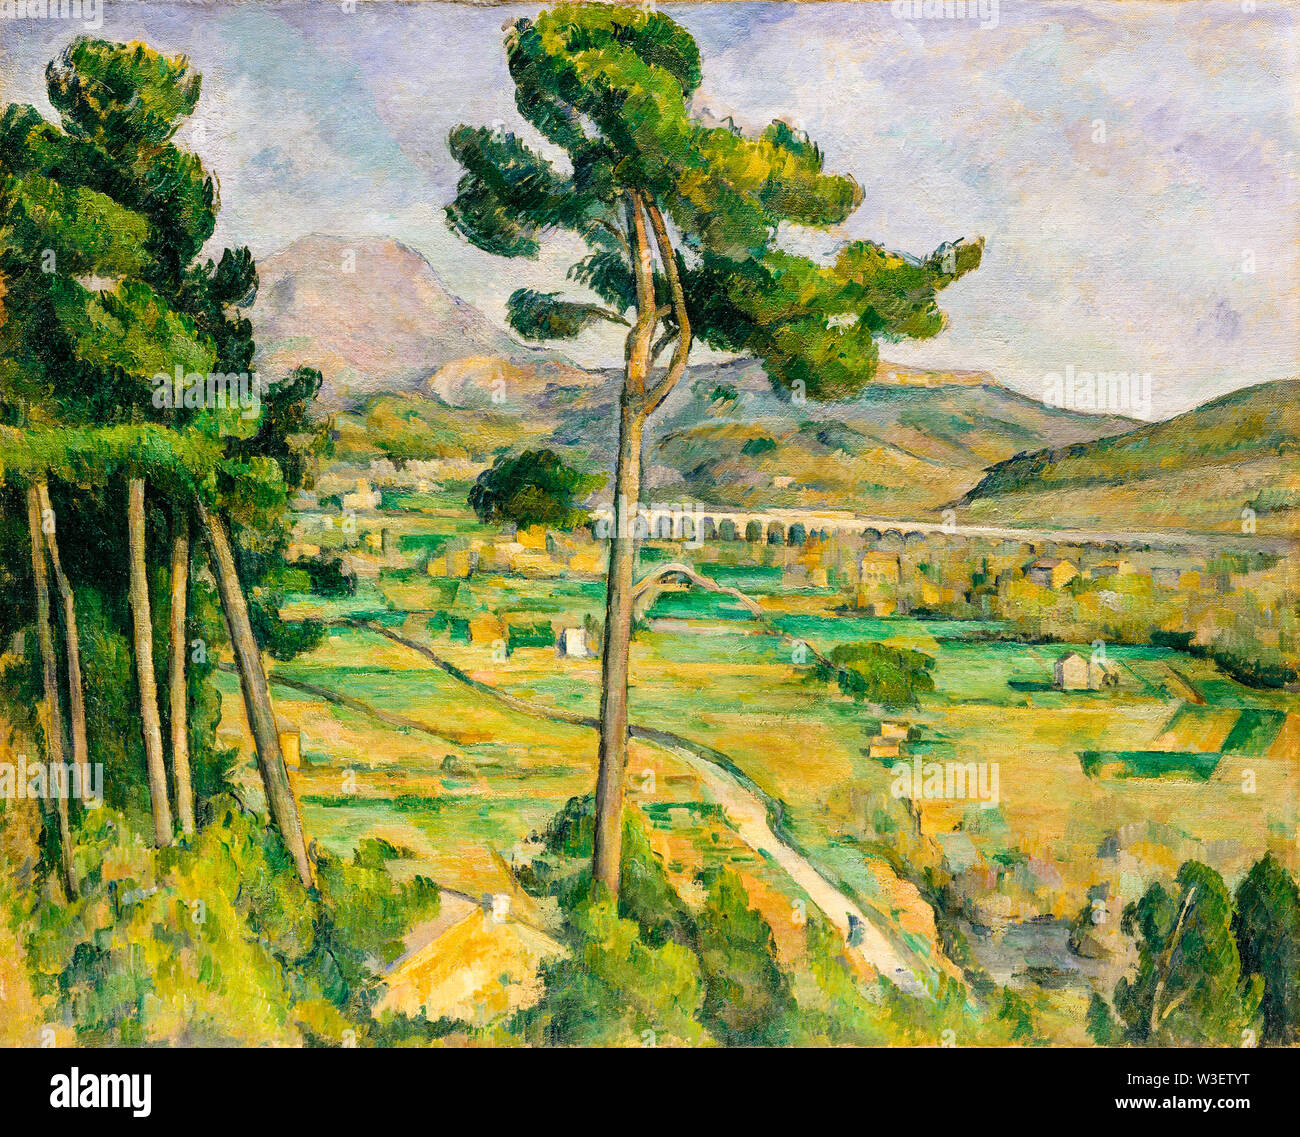 Paul Cézanne, la montagne Sainte-Victoire et le viaduc de la vallée de la rivière de l'Arc, la peinture de paysages, 1882-1885 Banque D'Images